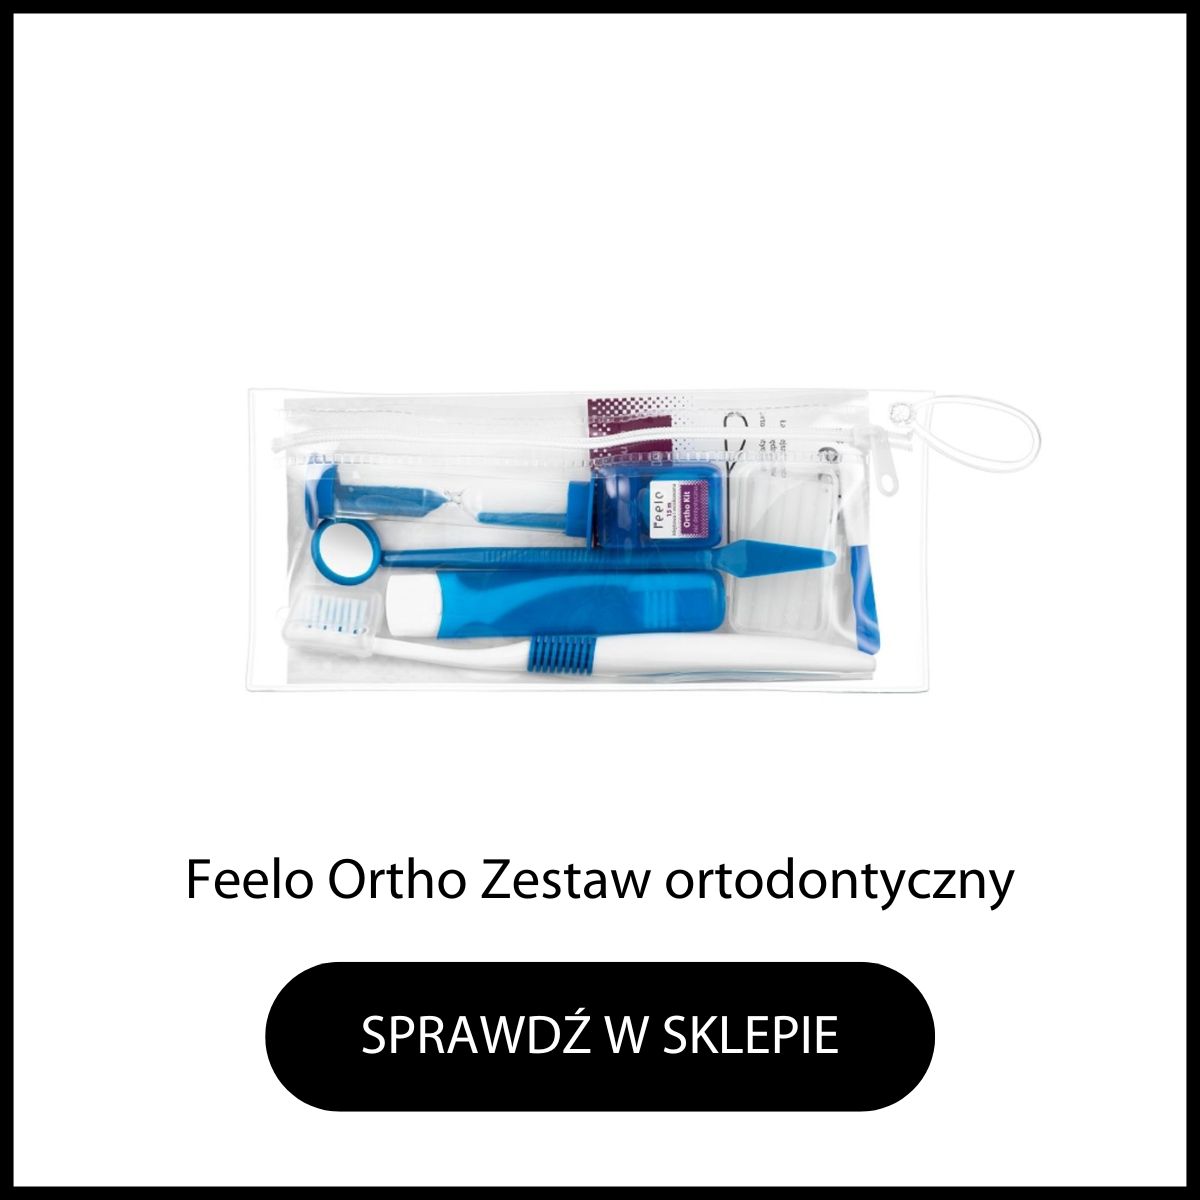 Feelo Ortho zestaw ortodontyczny